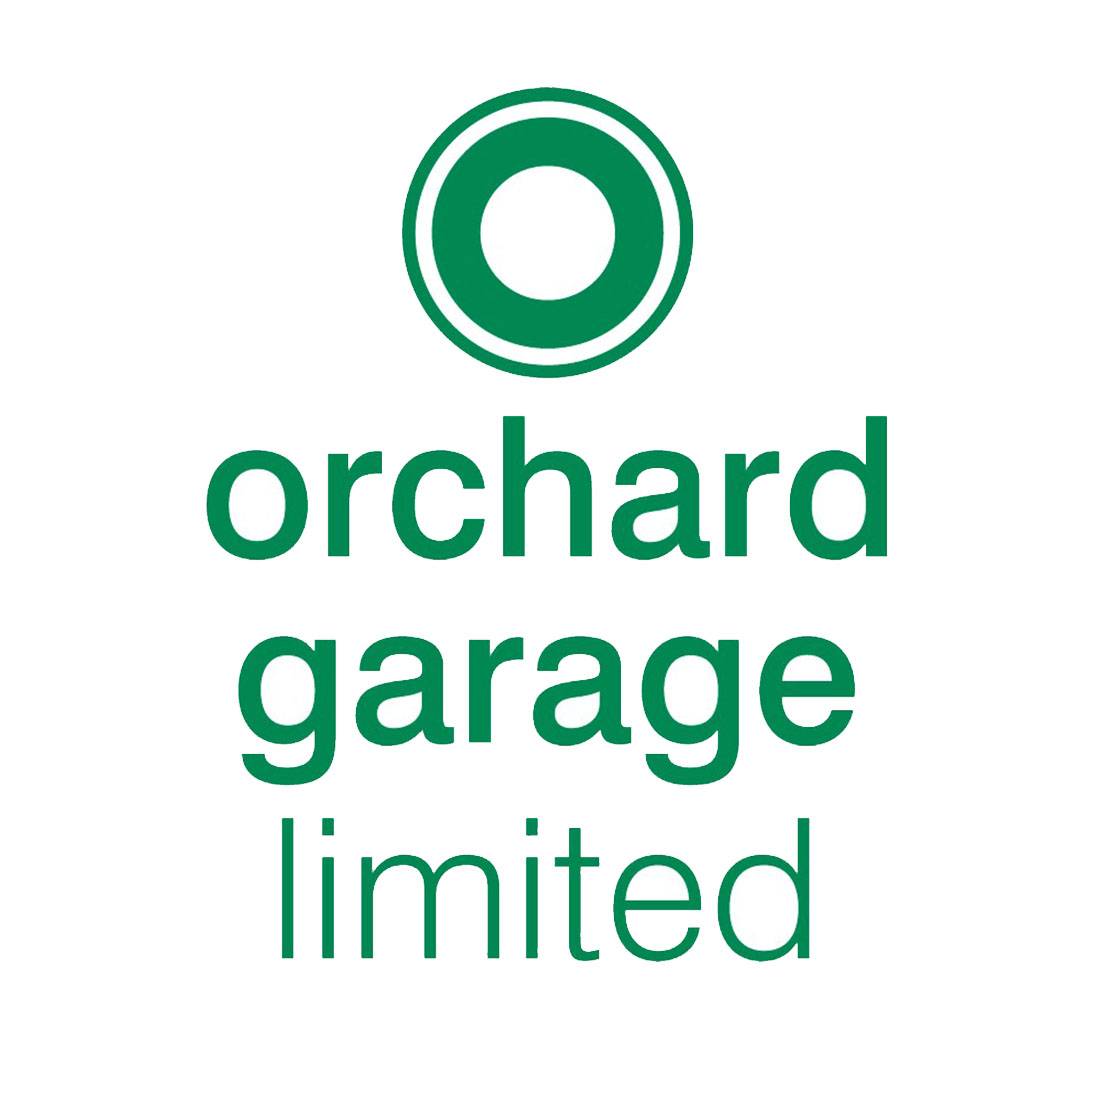 Senior shirt sponsor - Orchard Garage Limited